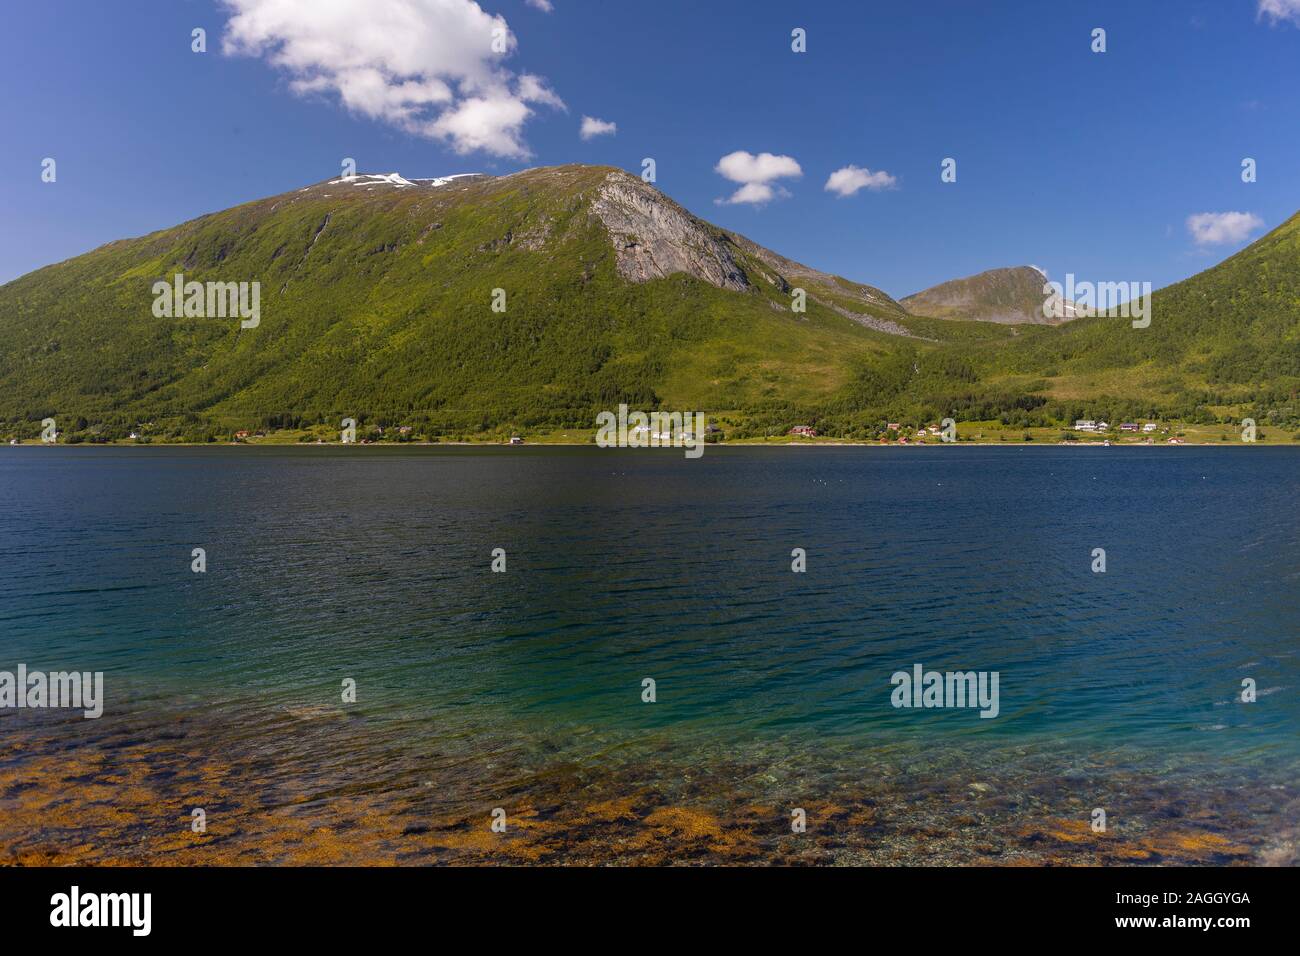 L'ÎLE DE KVALØYA, comté de Troms, NORVÈGE - paysage de montagnes et de rivières dans le nord de la Norvège. Banque D'Images